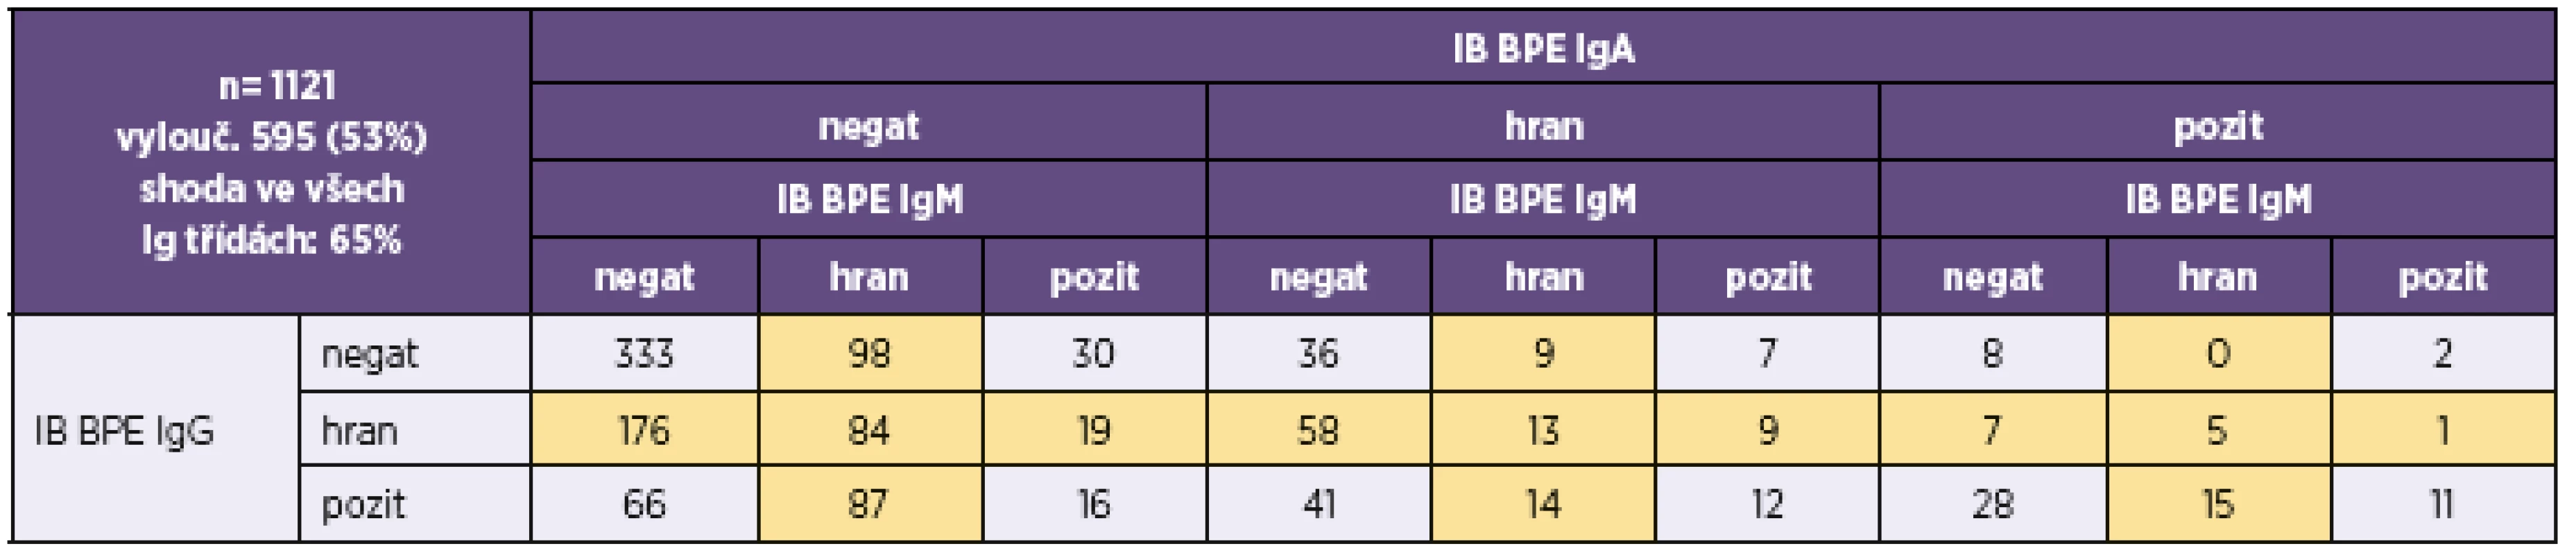 Přehled výsledků imunoblotové analýzy <i>B. pertussis</i> u vzorků, u nichž byla analýza provedena ve všech třídách (IgG, IgA i IgM)
Table 6. Overview of results of the immunoblot assay for <i>B. pertussis</i> in samples tested for all (IgG, IgA, and IgM) classes of antibodies